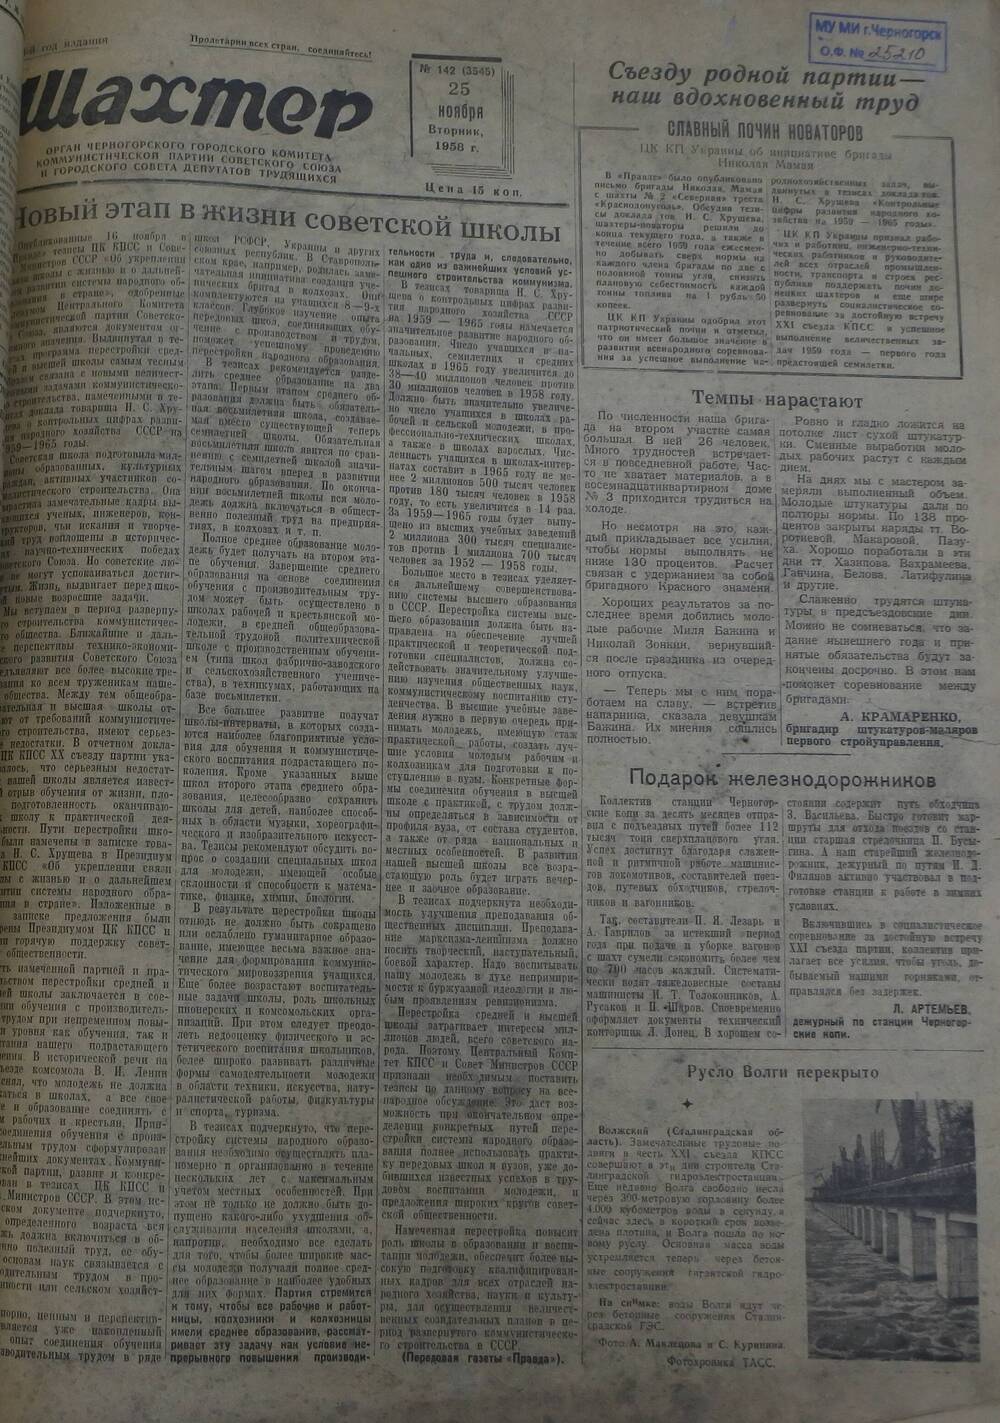 Газета «Шахтер». Выпуск № 142 от 25.11.1958 г.